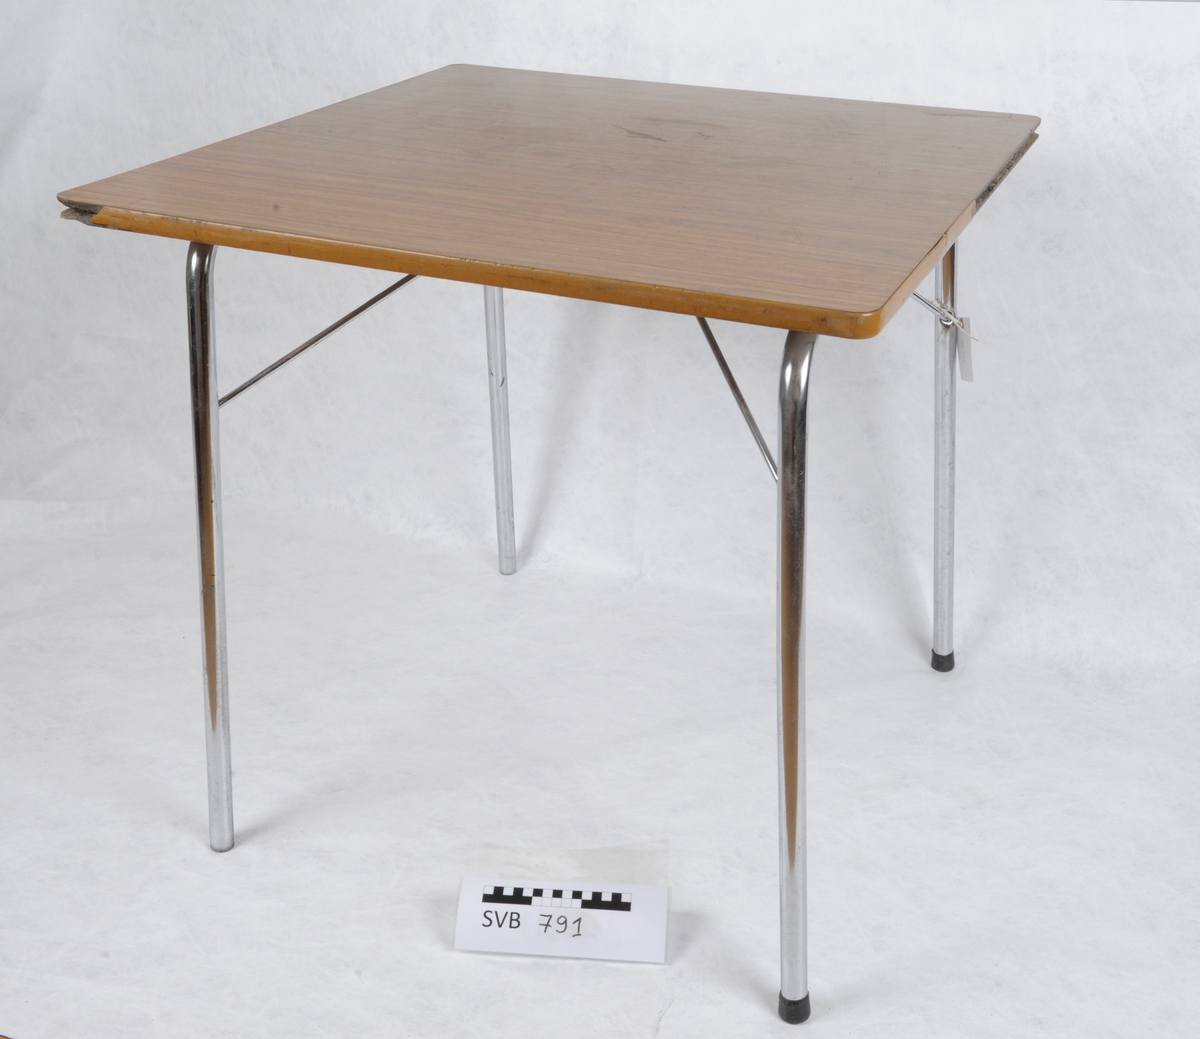 Kvadratisk bord med stålbein og plate av respatex.